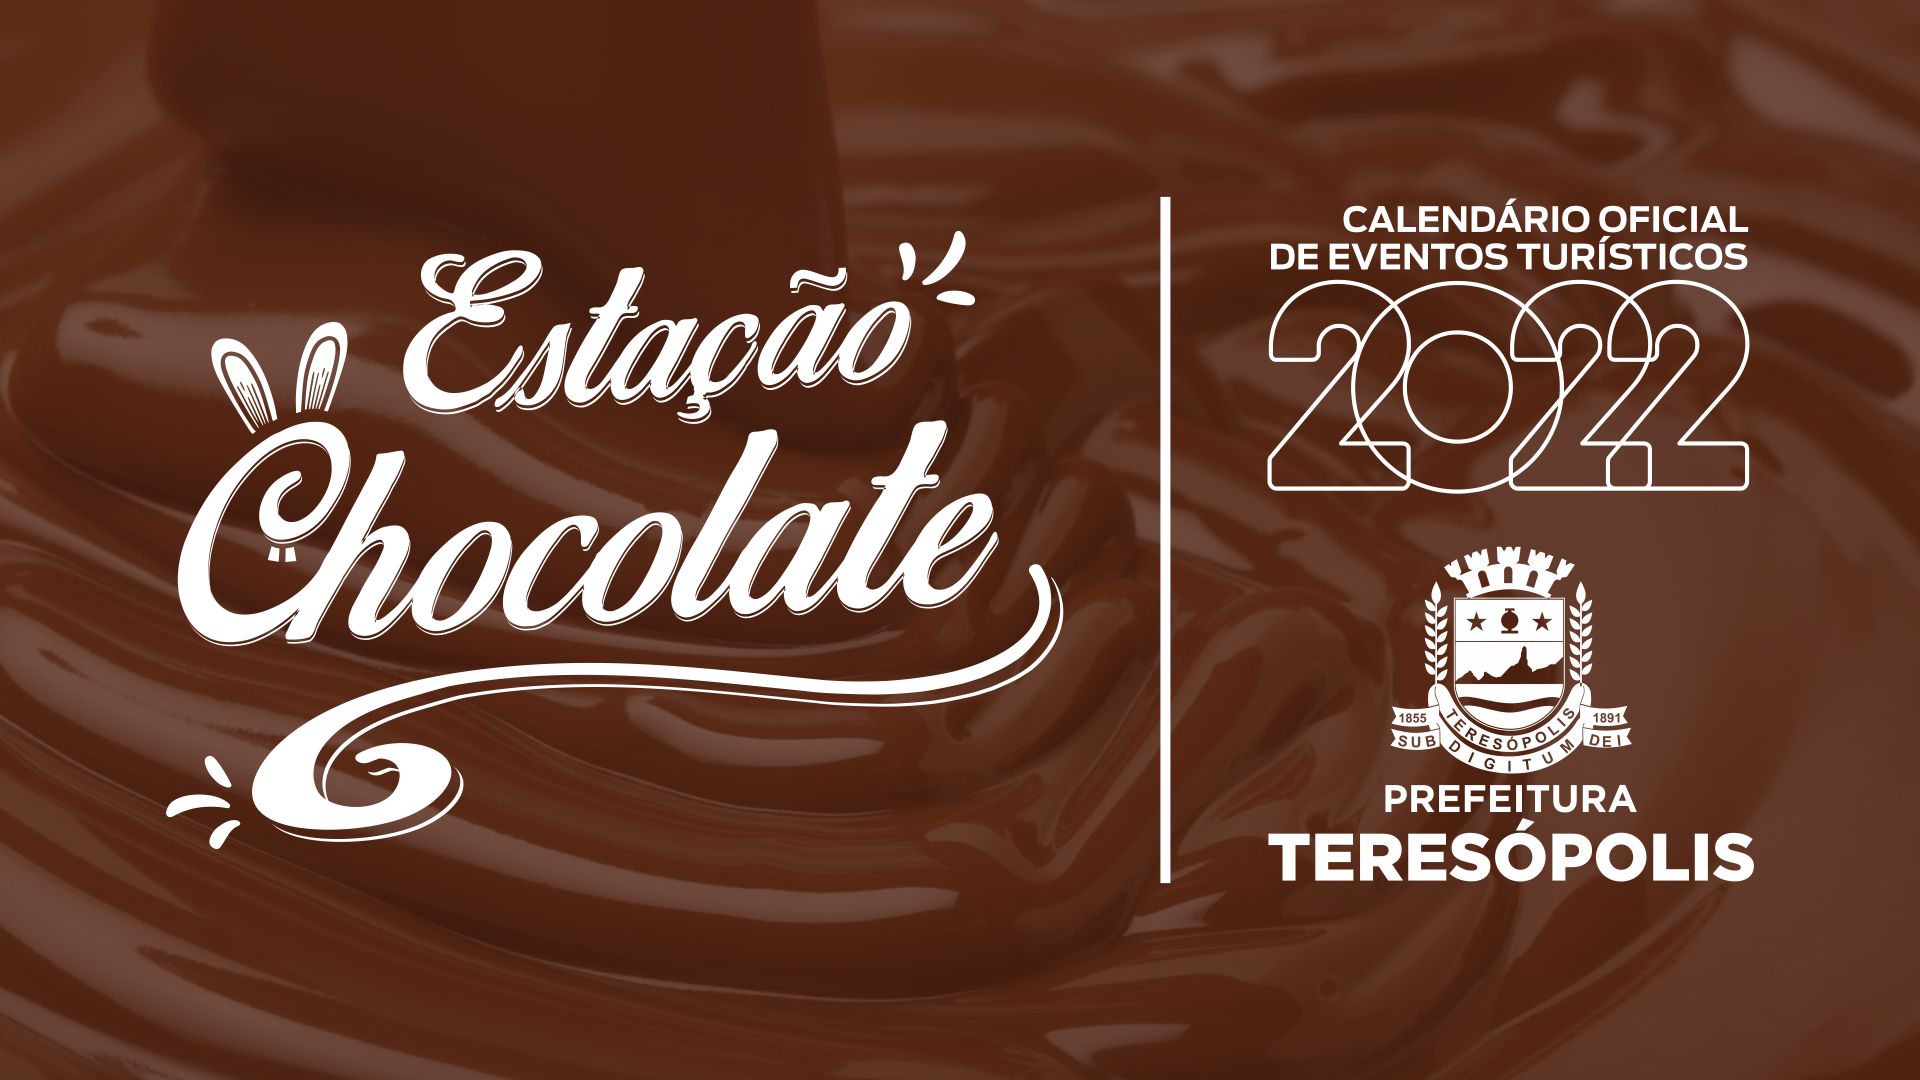 Você está visualizando atualmente Estação Chocolate: Uma experiência deliciosa em Teresópolis